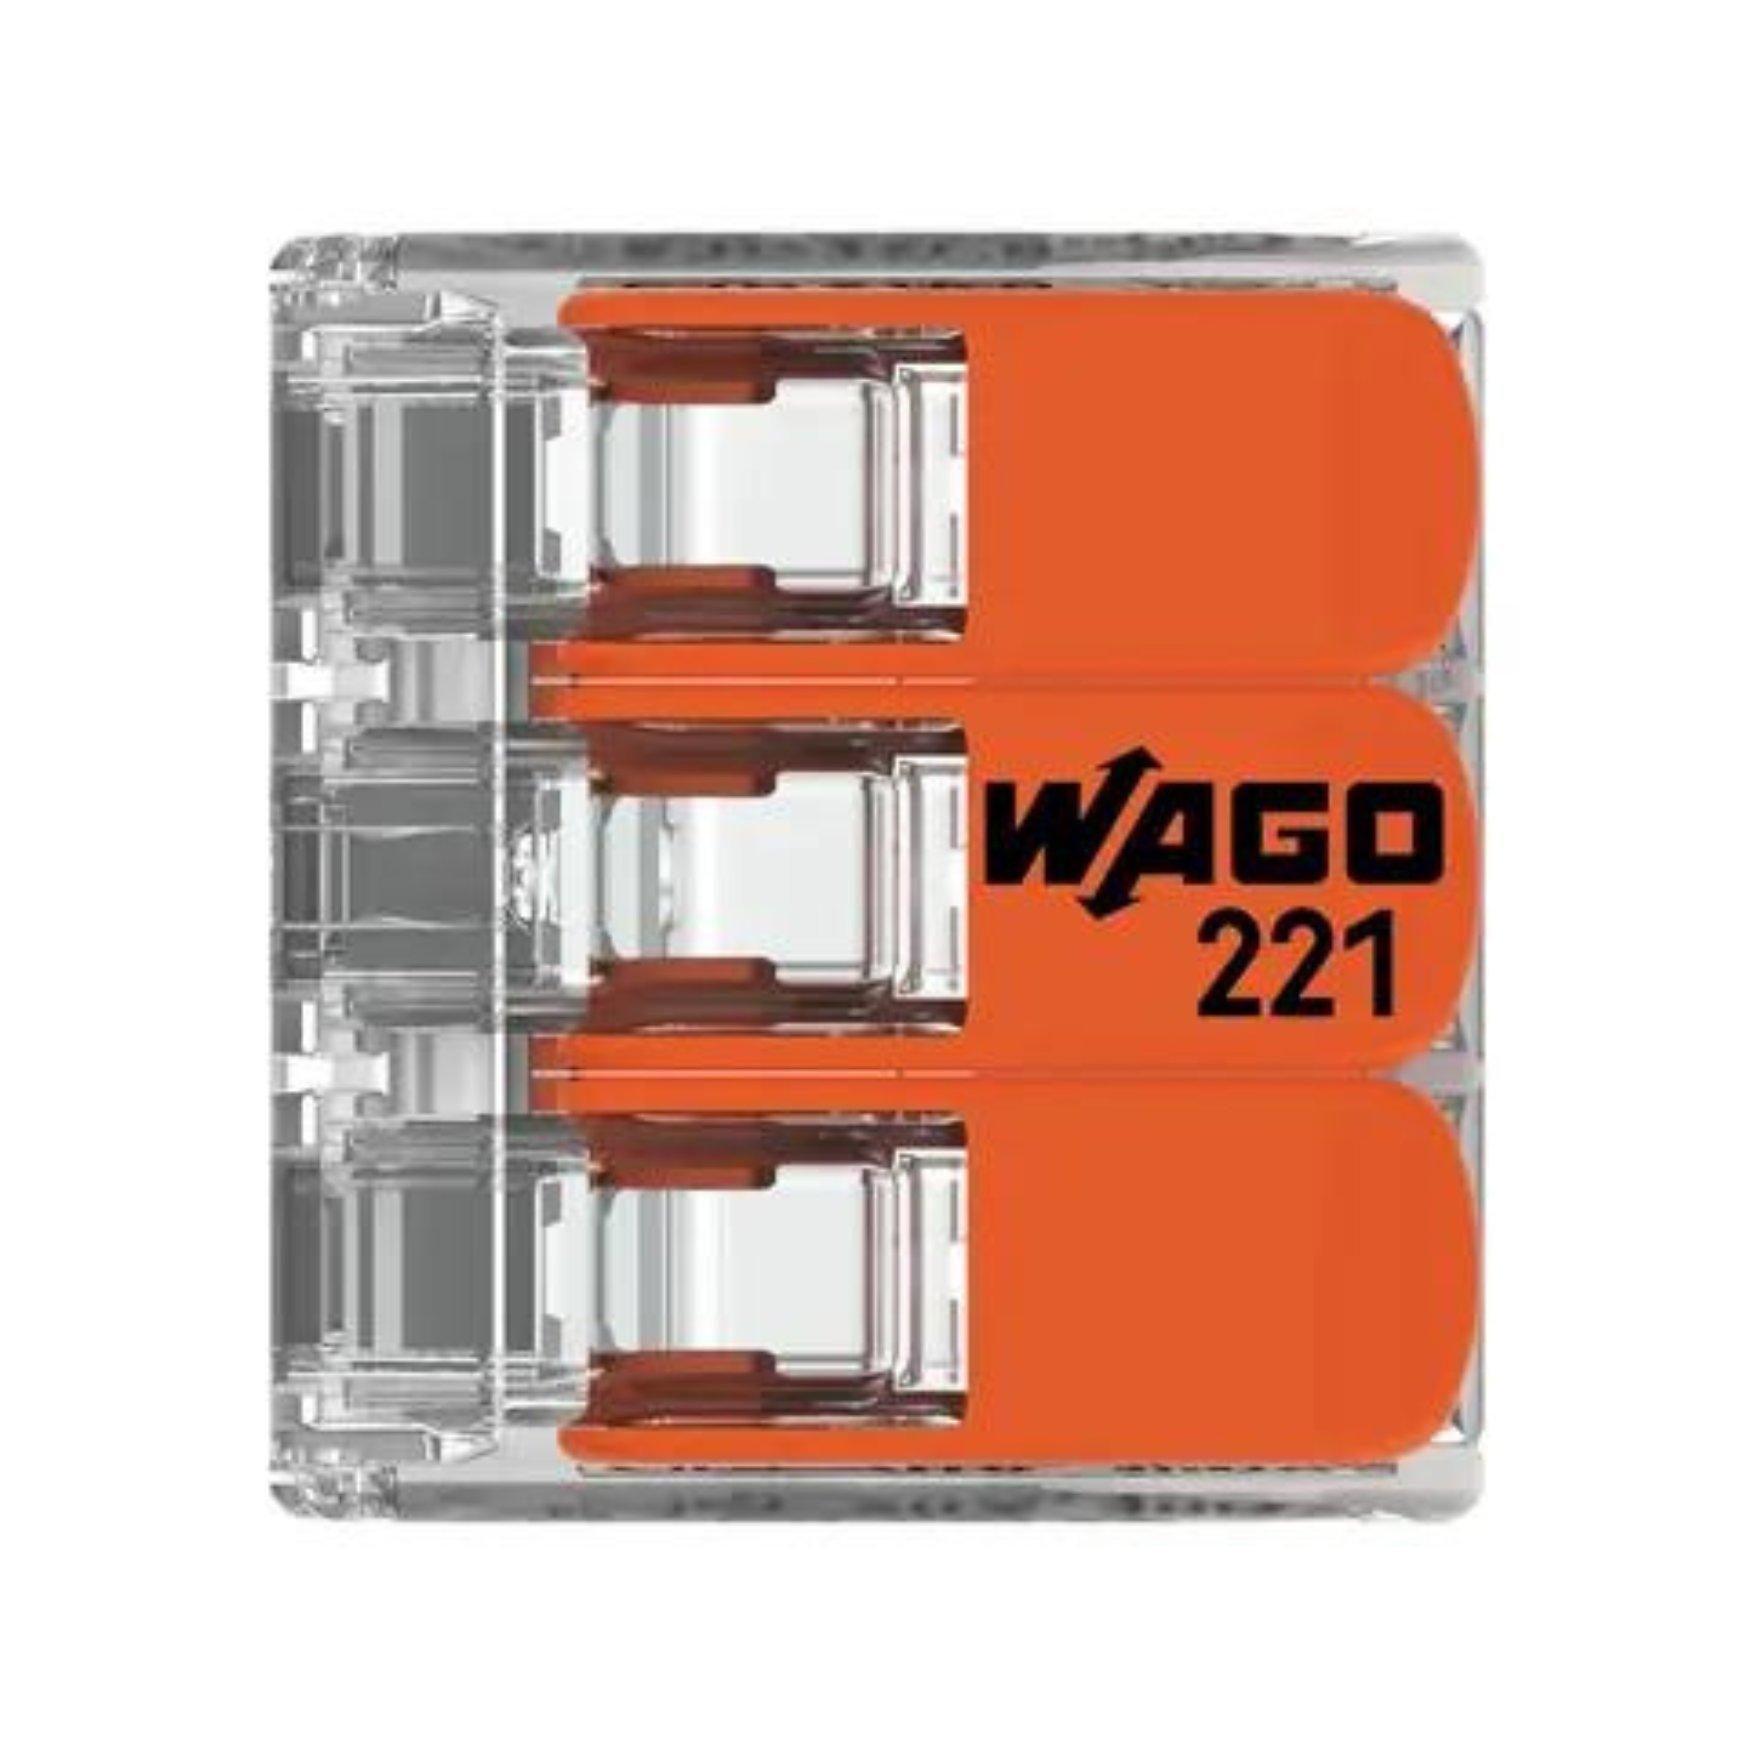 wago/221-413-2-4